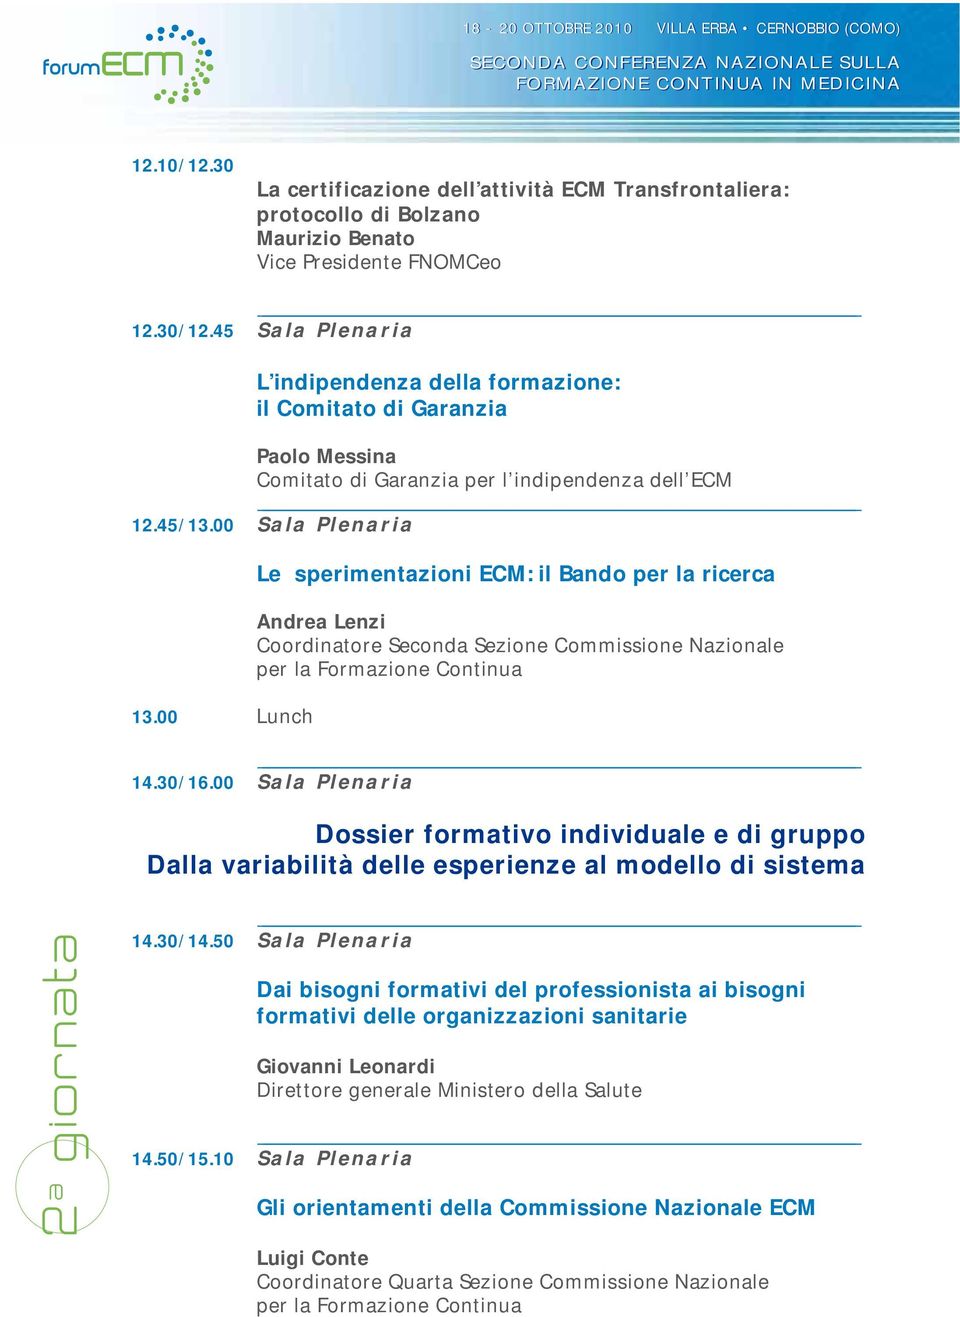 00 Lunch Le sperimentazioni ECM: il Bando per la ricerca Andrea Lenzi Coordinatore Seconda Sezione Commissione Nazionale 14.30/16.